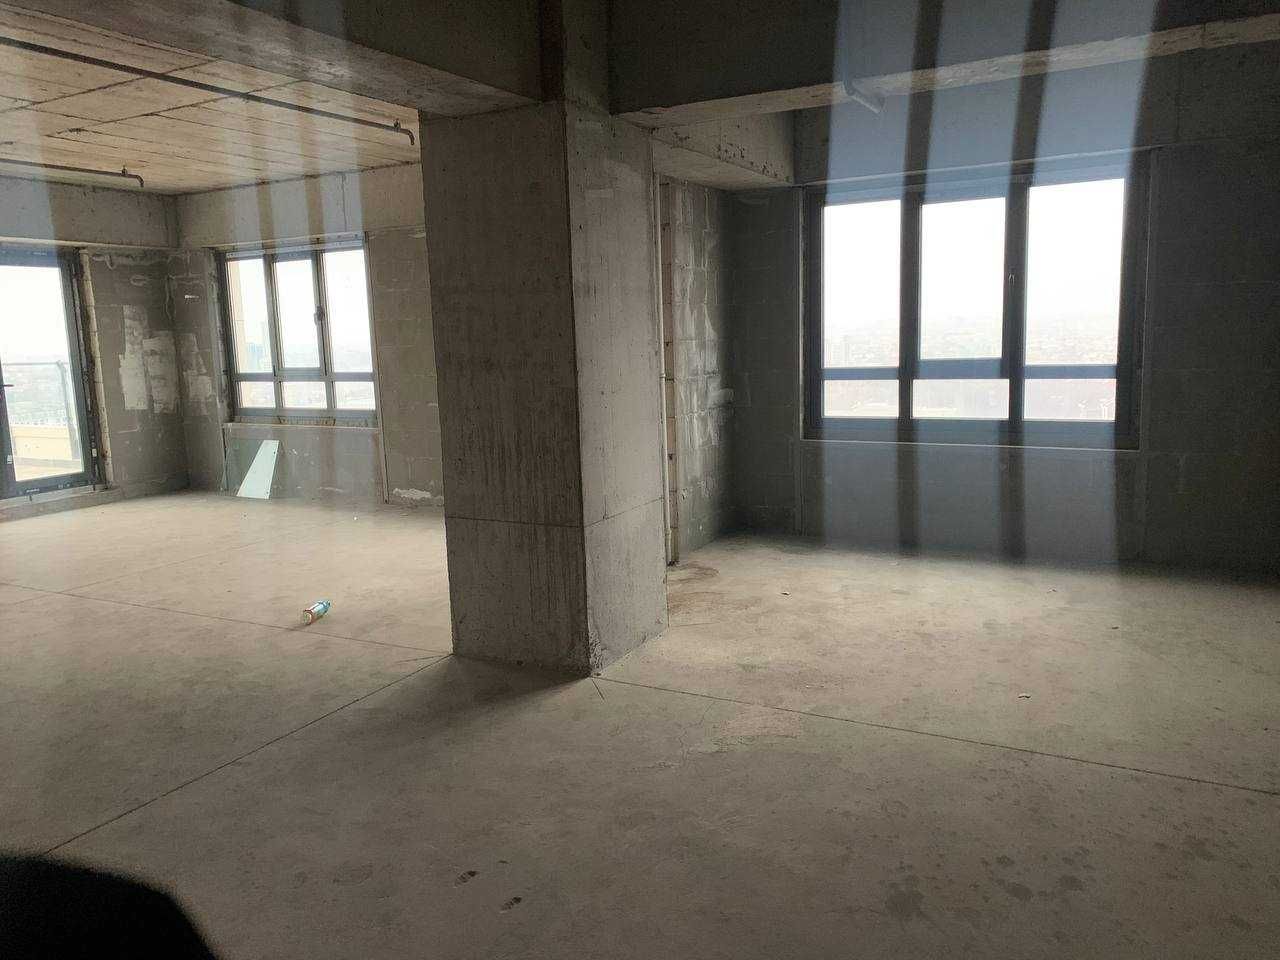 двушка 77м2 + терраса 131м2 в Akay City на Дархане 21 этаж!`